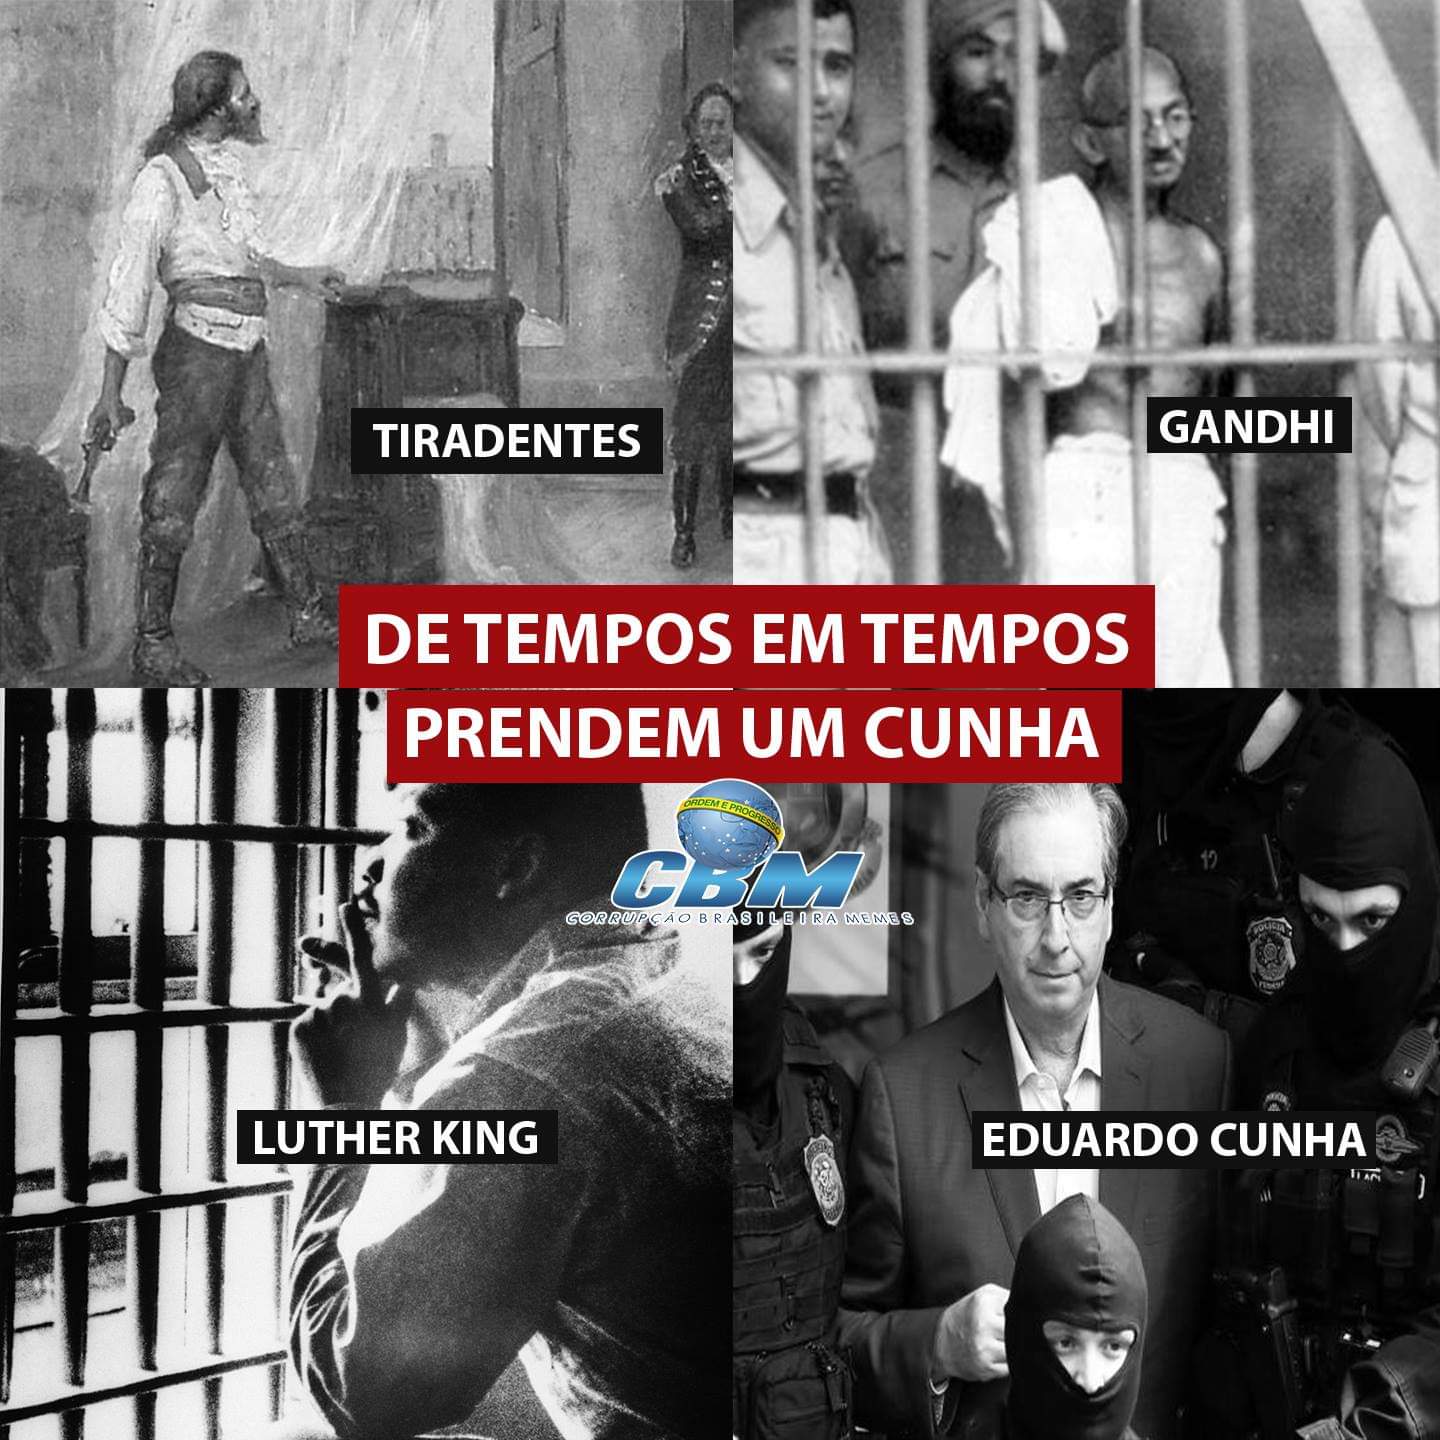 A CBM criou um telegram pra - Corrupção Brasileira Memes